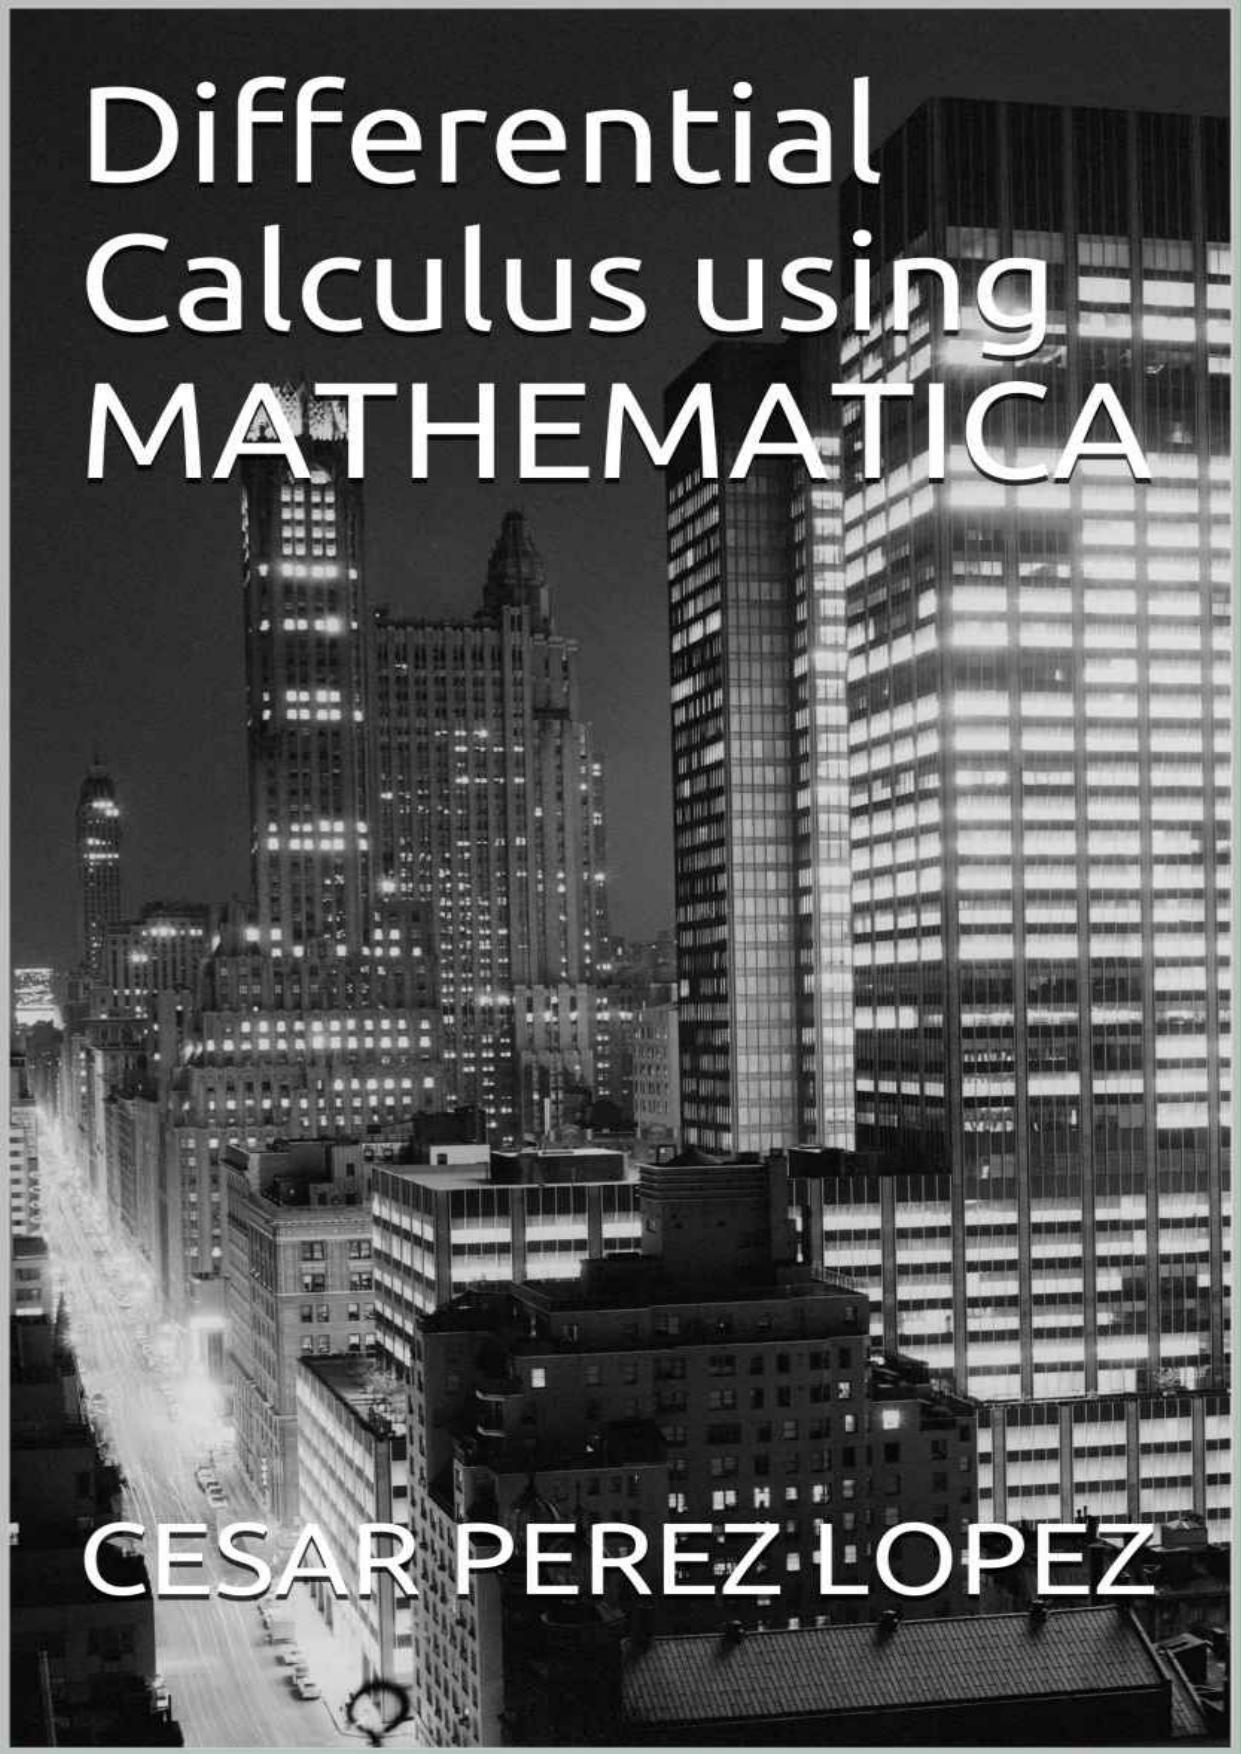 Differential Calculus using Mathematica®